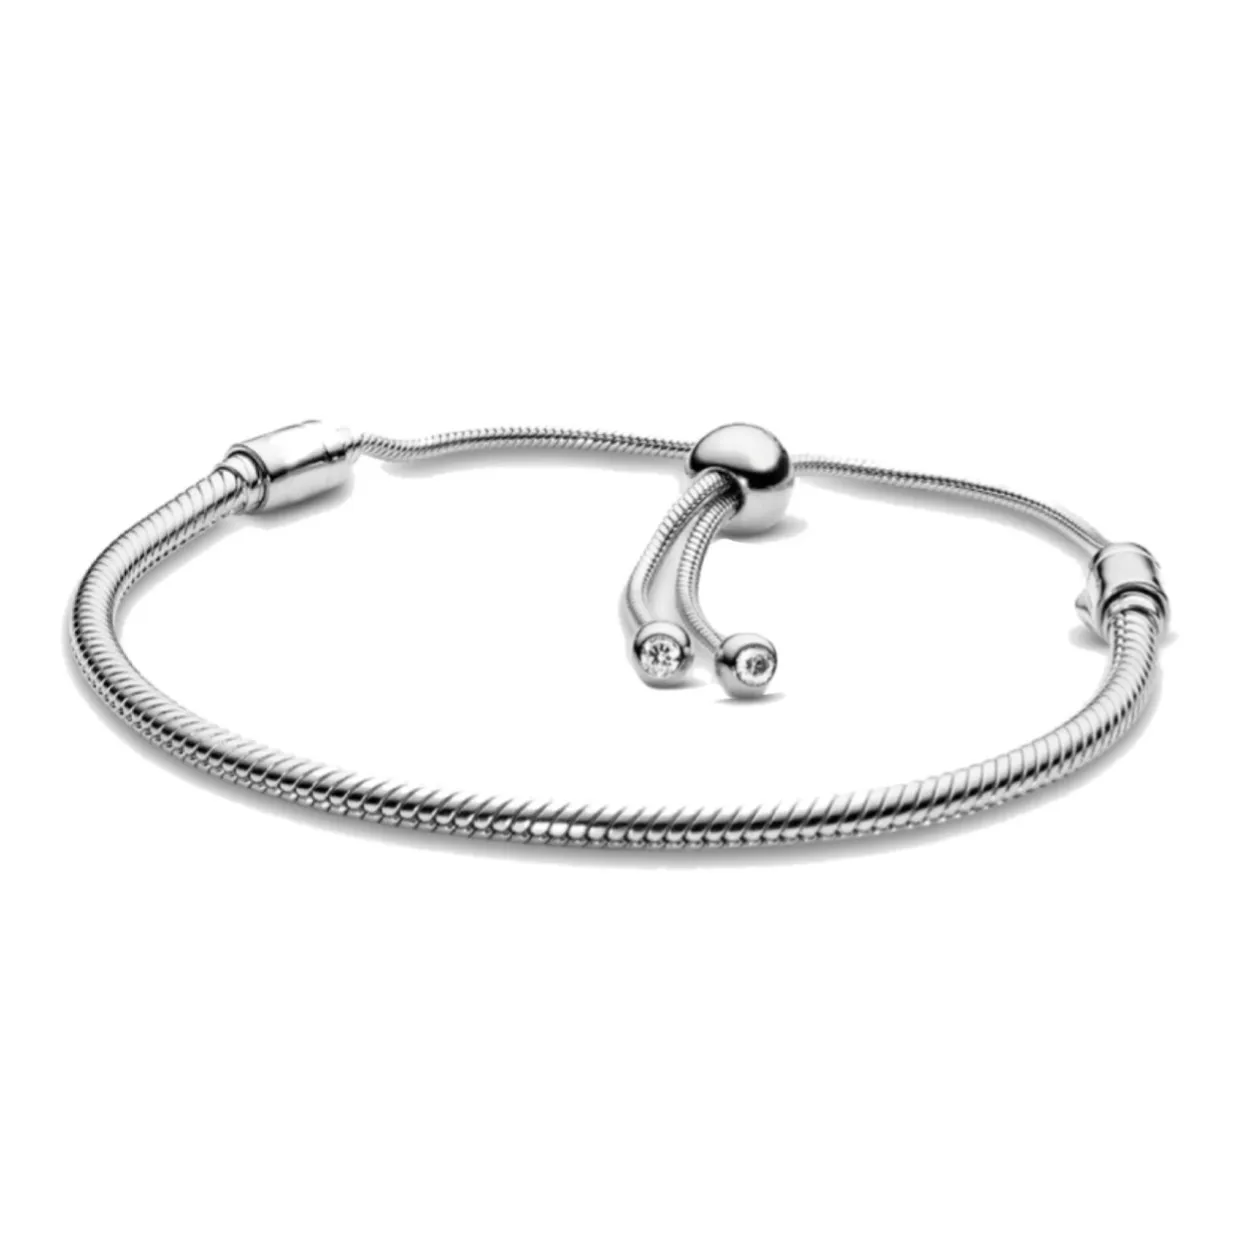 Original Pando breloque chaîne serpent 100% 925 bracelet en argent sterling pour les femmes de mode classique de haute qualité bijoux à bricoler soi-même